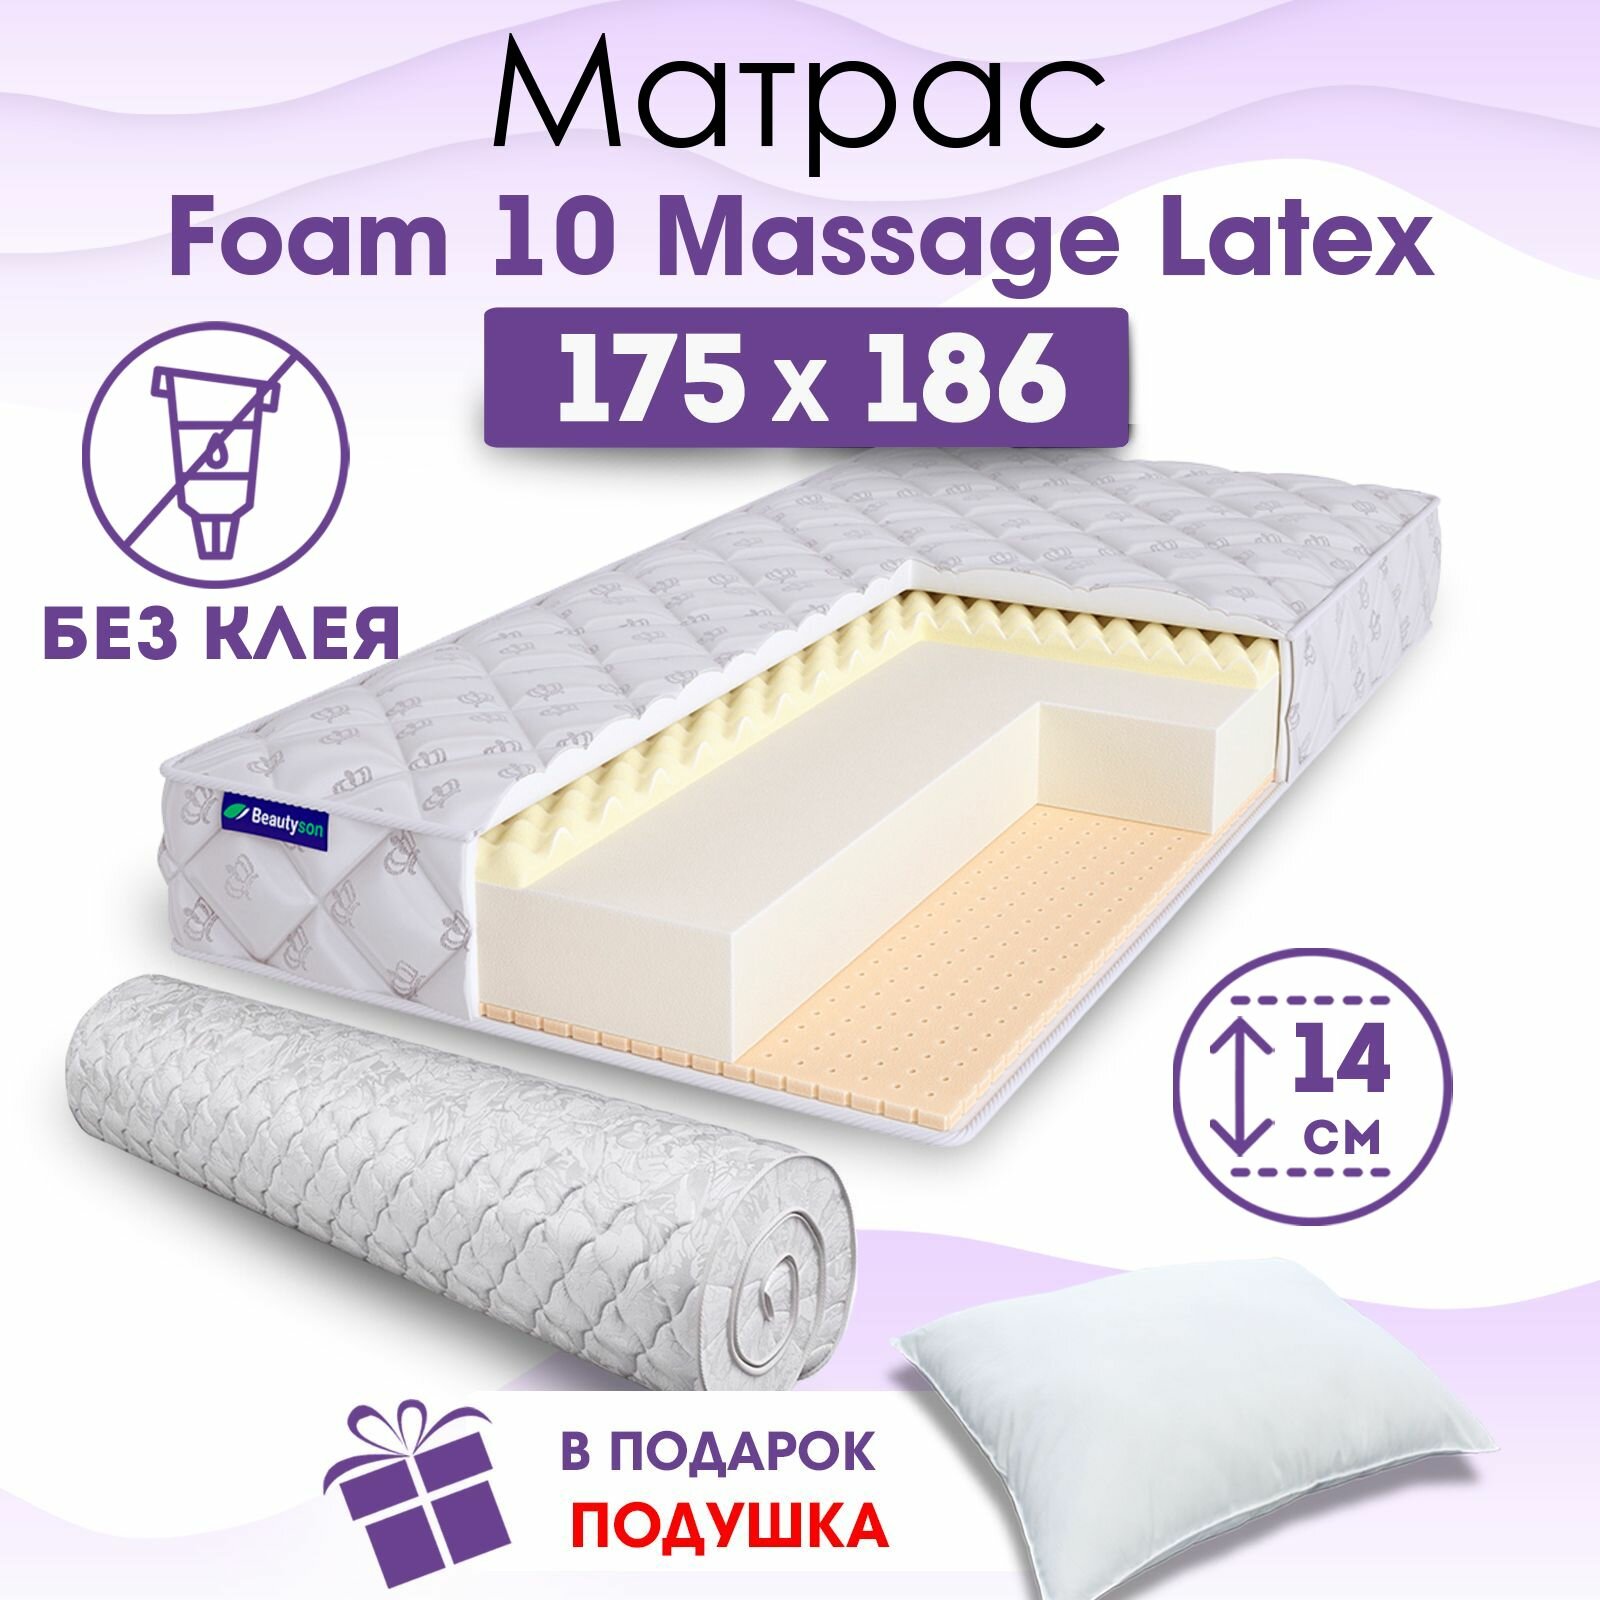 Ортопедический матрас Beautyson Foam 10 Massage Latex без клея, 175х186, 14 см, беспружинный, двухспальный, на кровать, для дивана, мягкий, не высокий